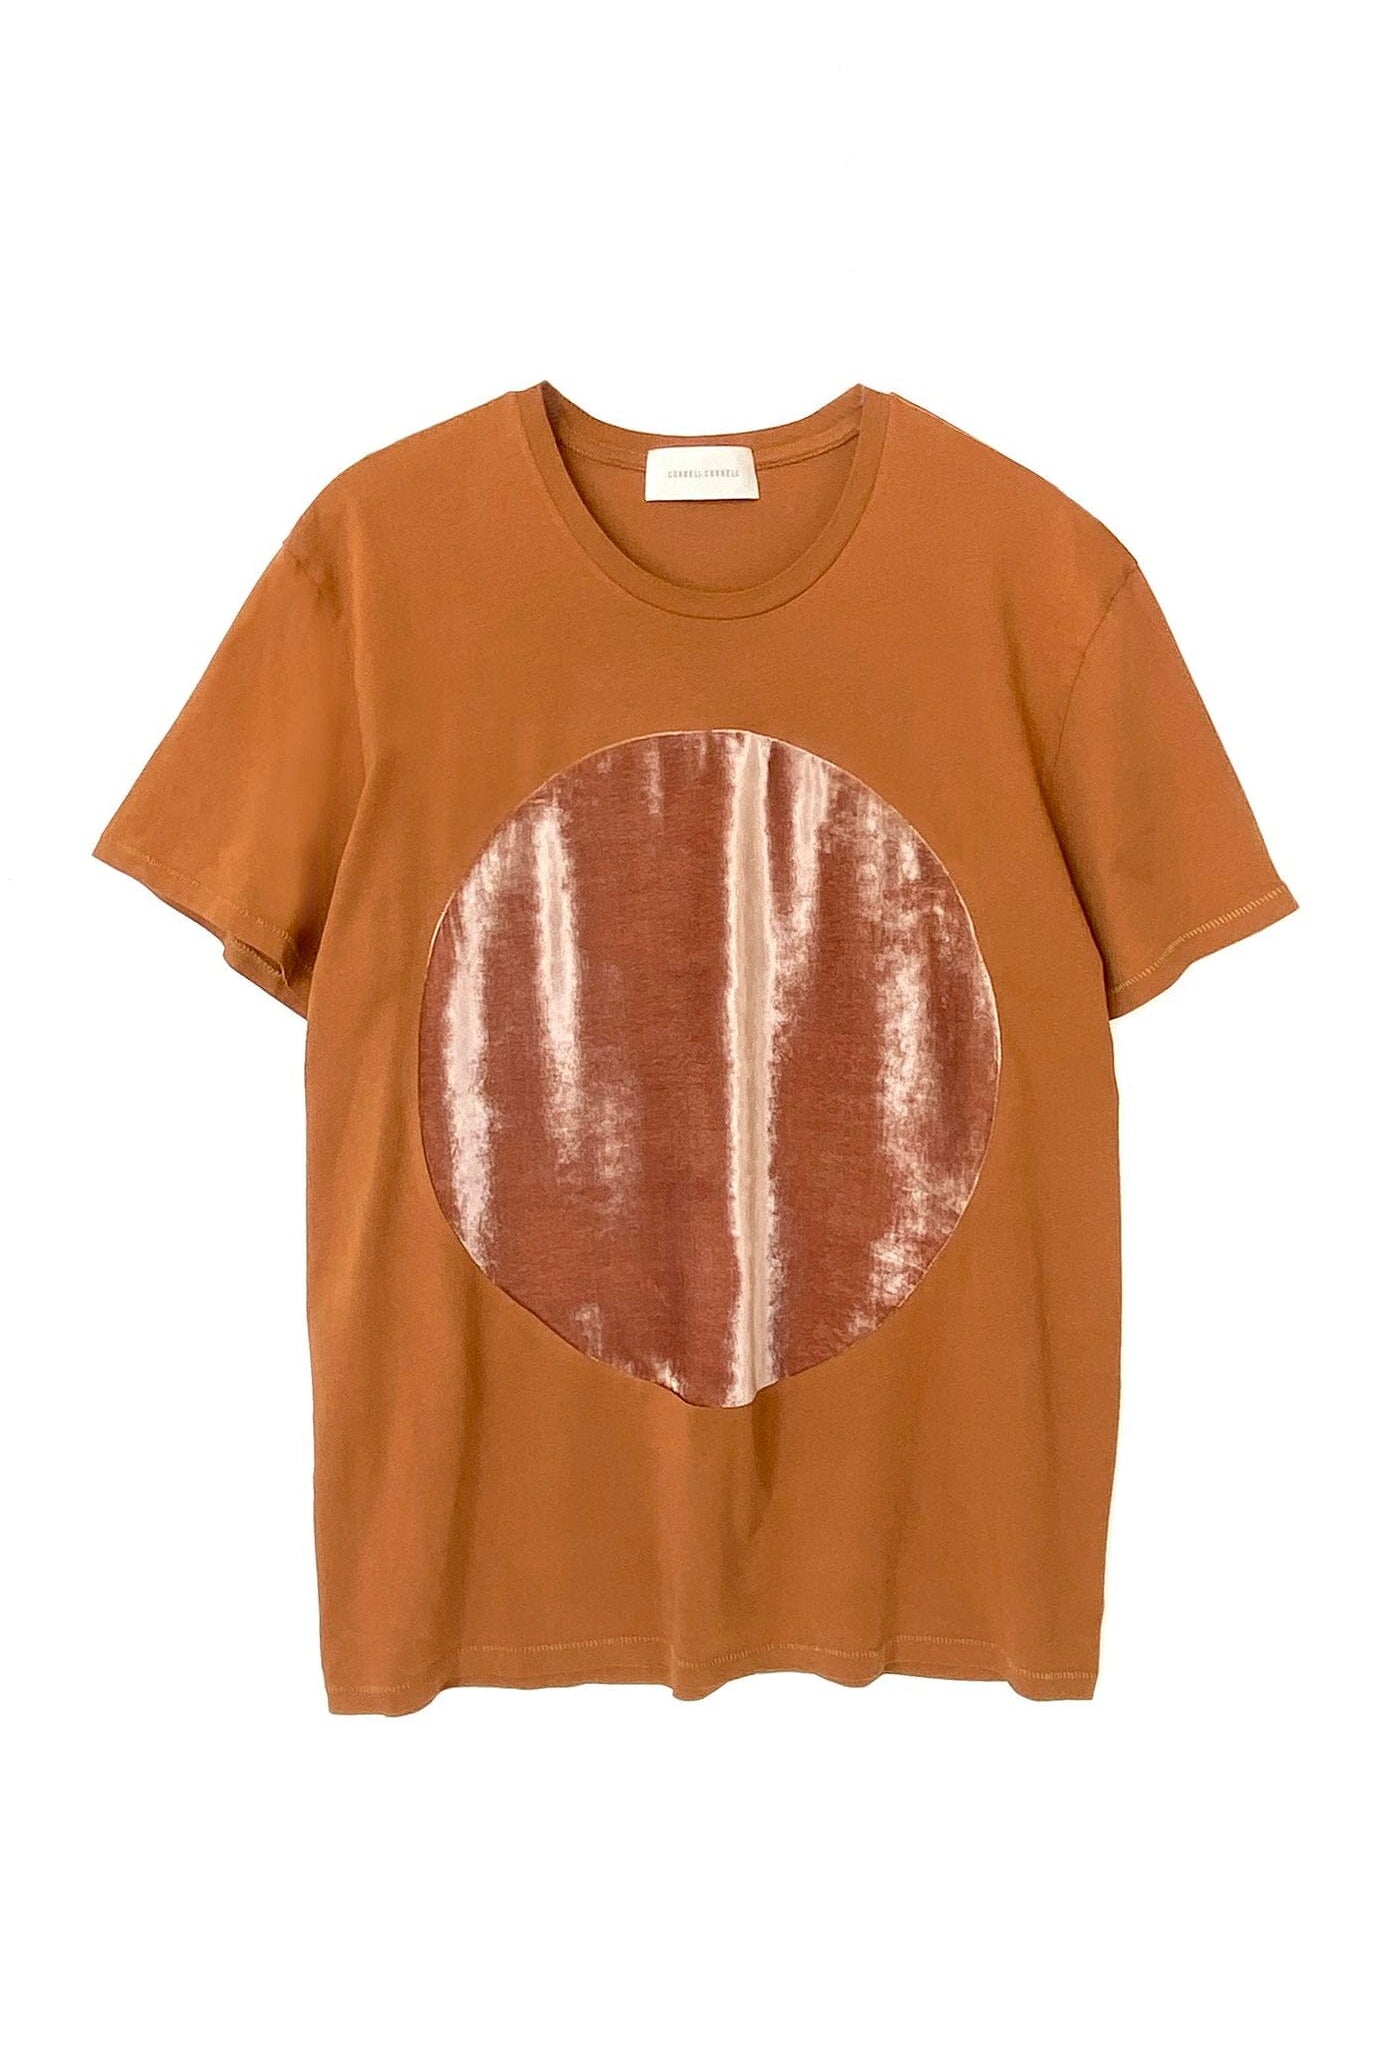 Correll Correll | Velvet T-Shirt In Turmeric - SHOP YUCCA Shirts & Tops CORRELL CORRELL - YUCCA 